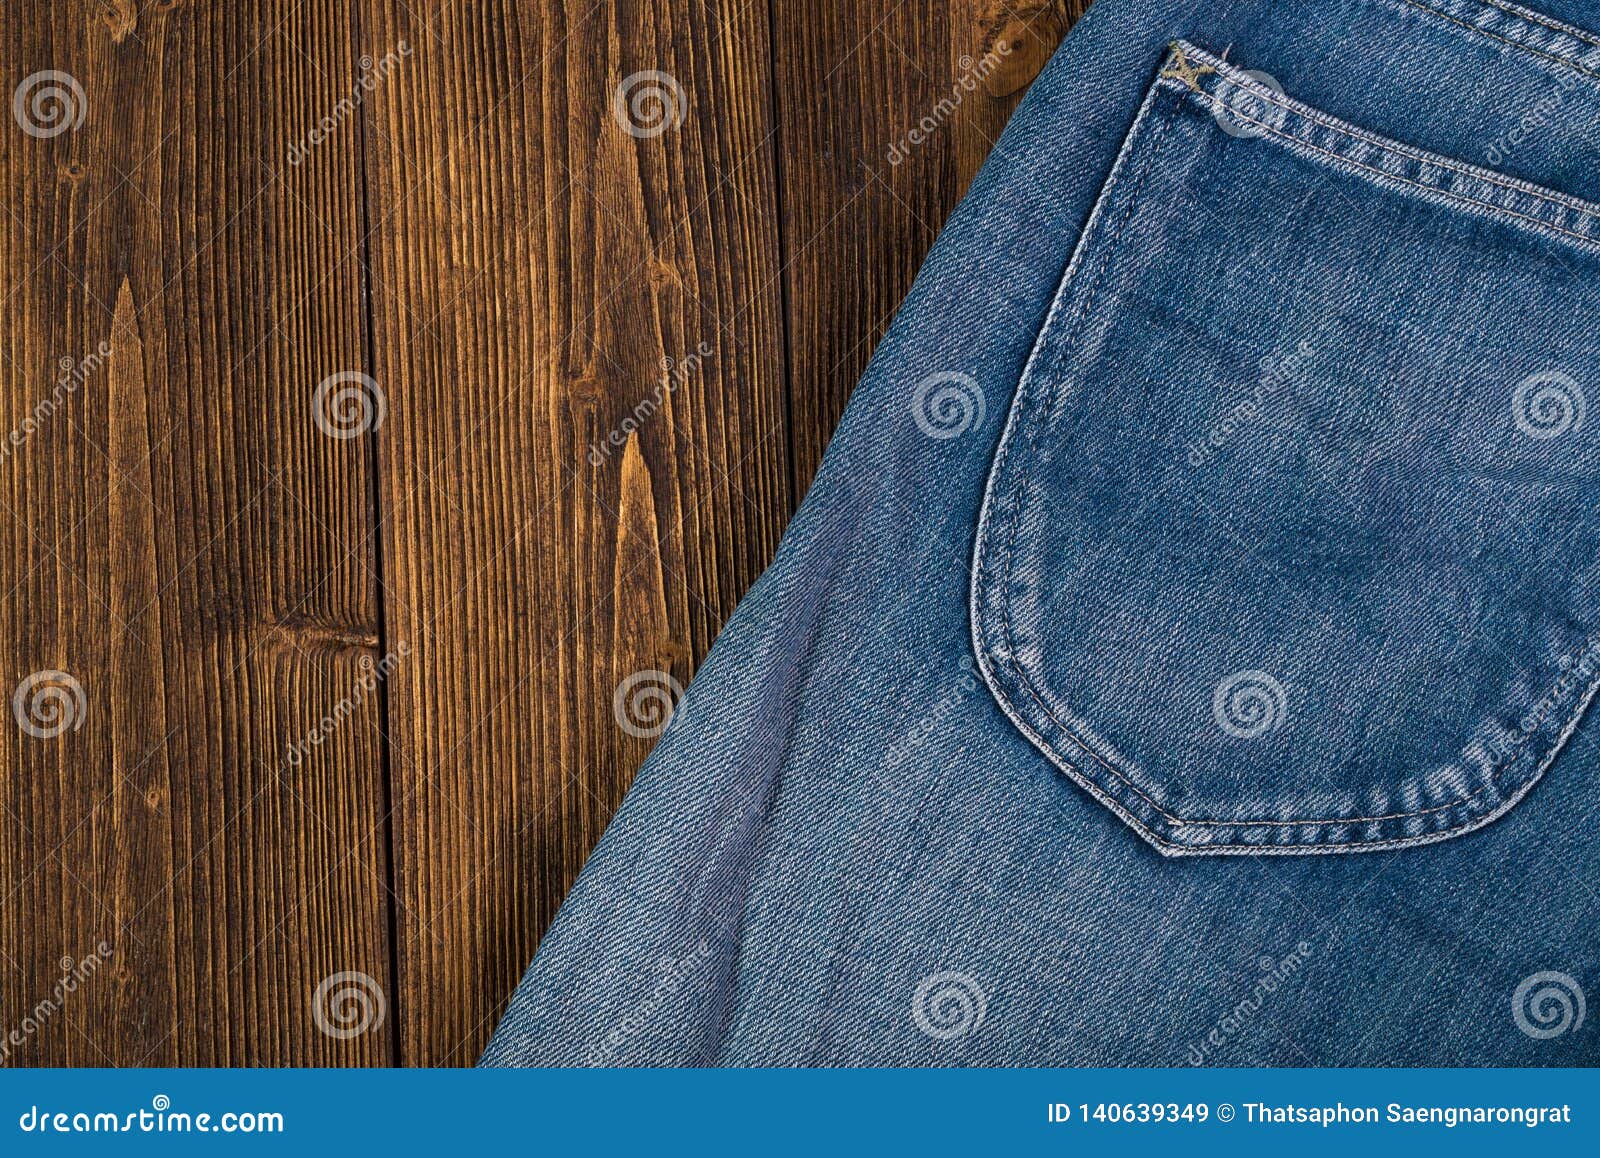 Frayed Jeans or Blue Jeans Denim Collection on Rough Dark Wooden Table Background, View with Copy Fashion Concept Imagen de archivo - Imagen de tela, mezclilla: 140639349